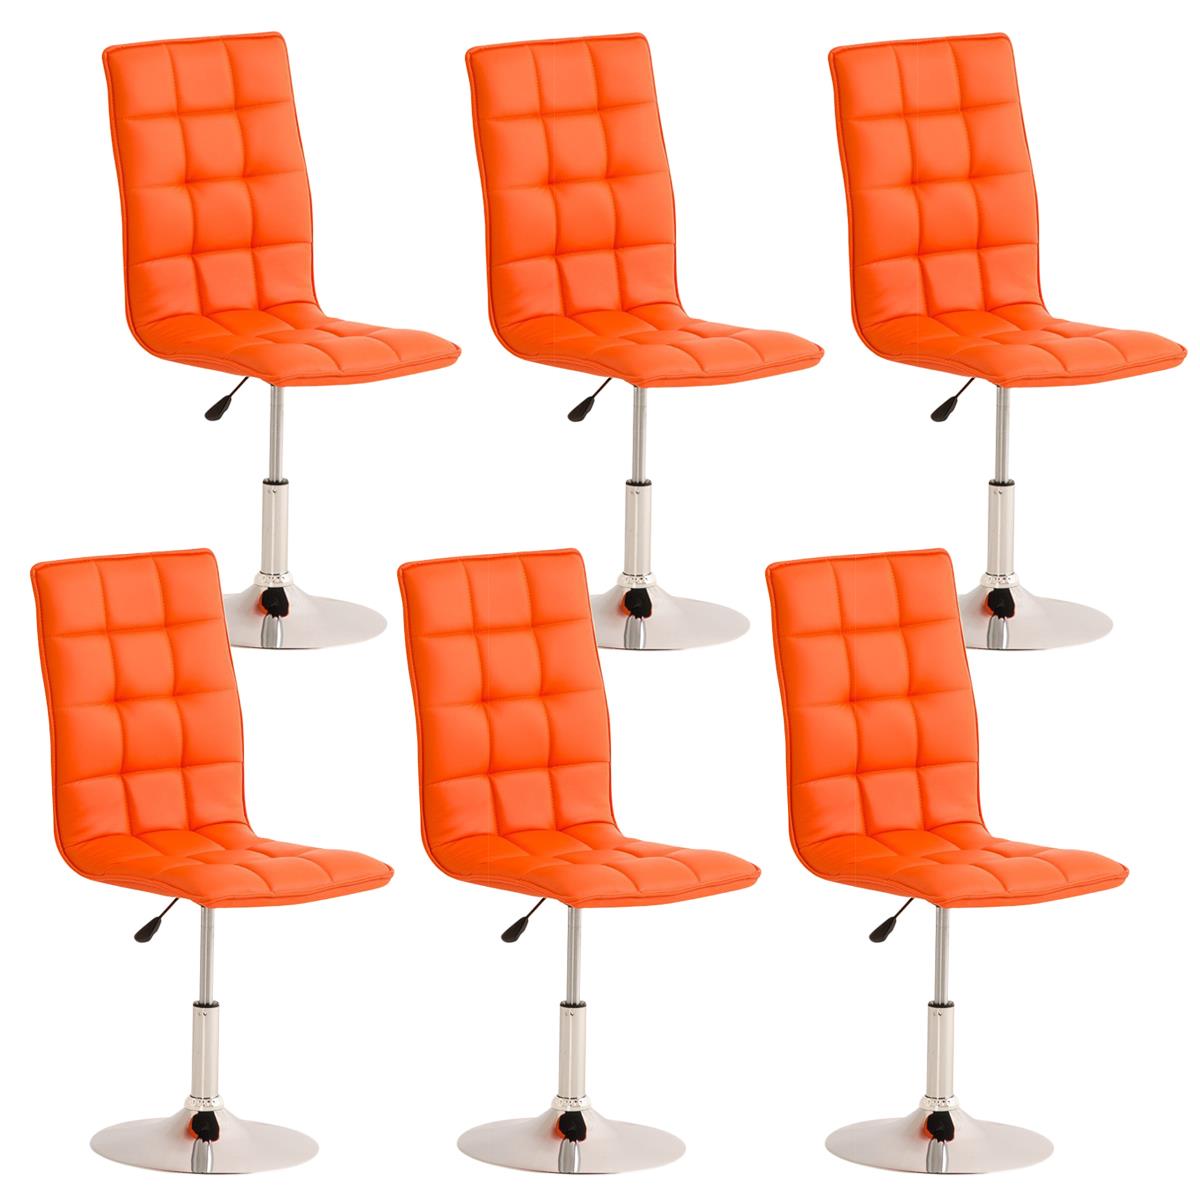 Lote de 6 sillas de Comedor o Cocina PESCARA PIEL, En Naranja, Altura Regulable